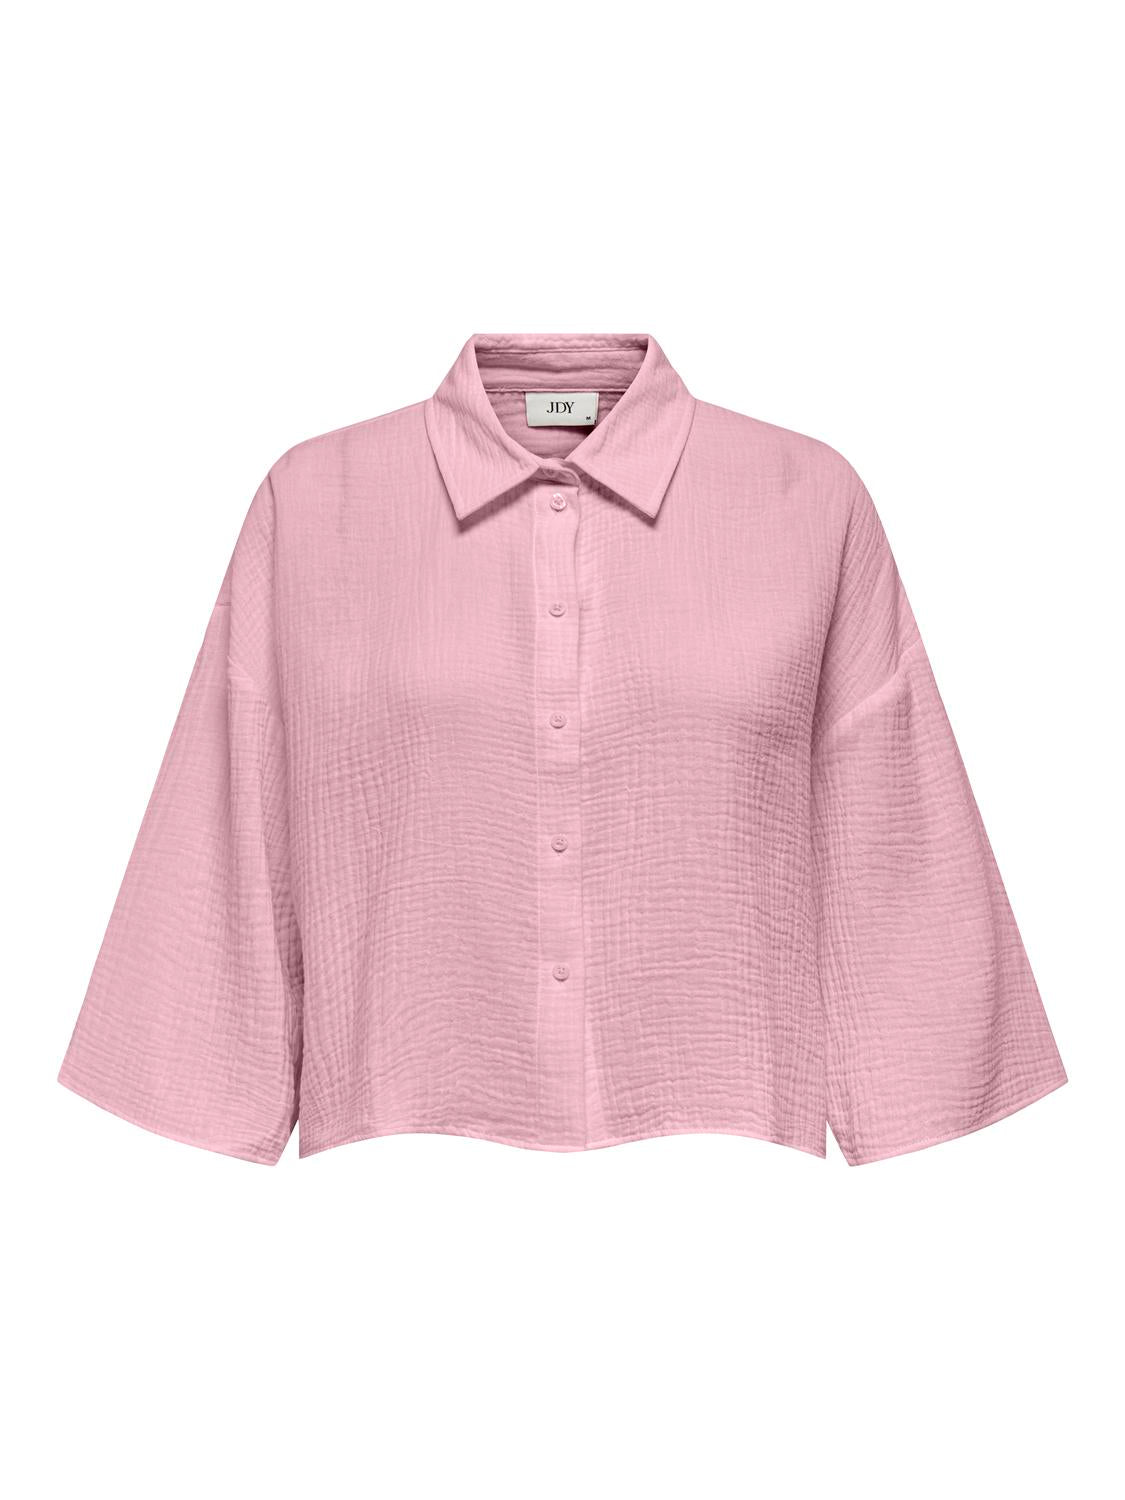 JDYTHEIS Shirts - Parfait Pink